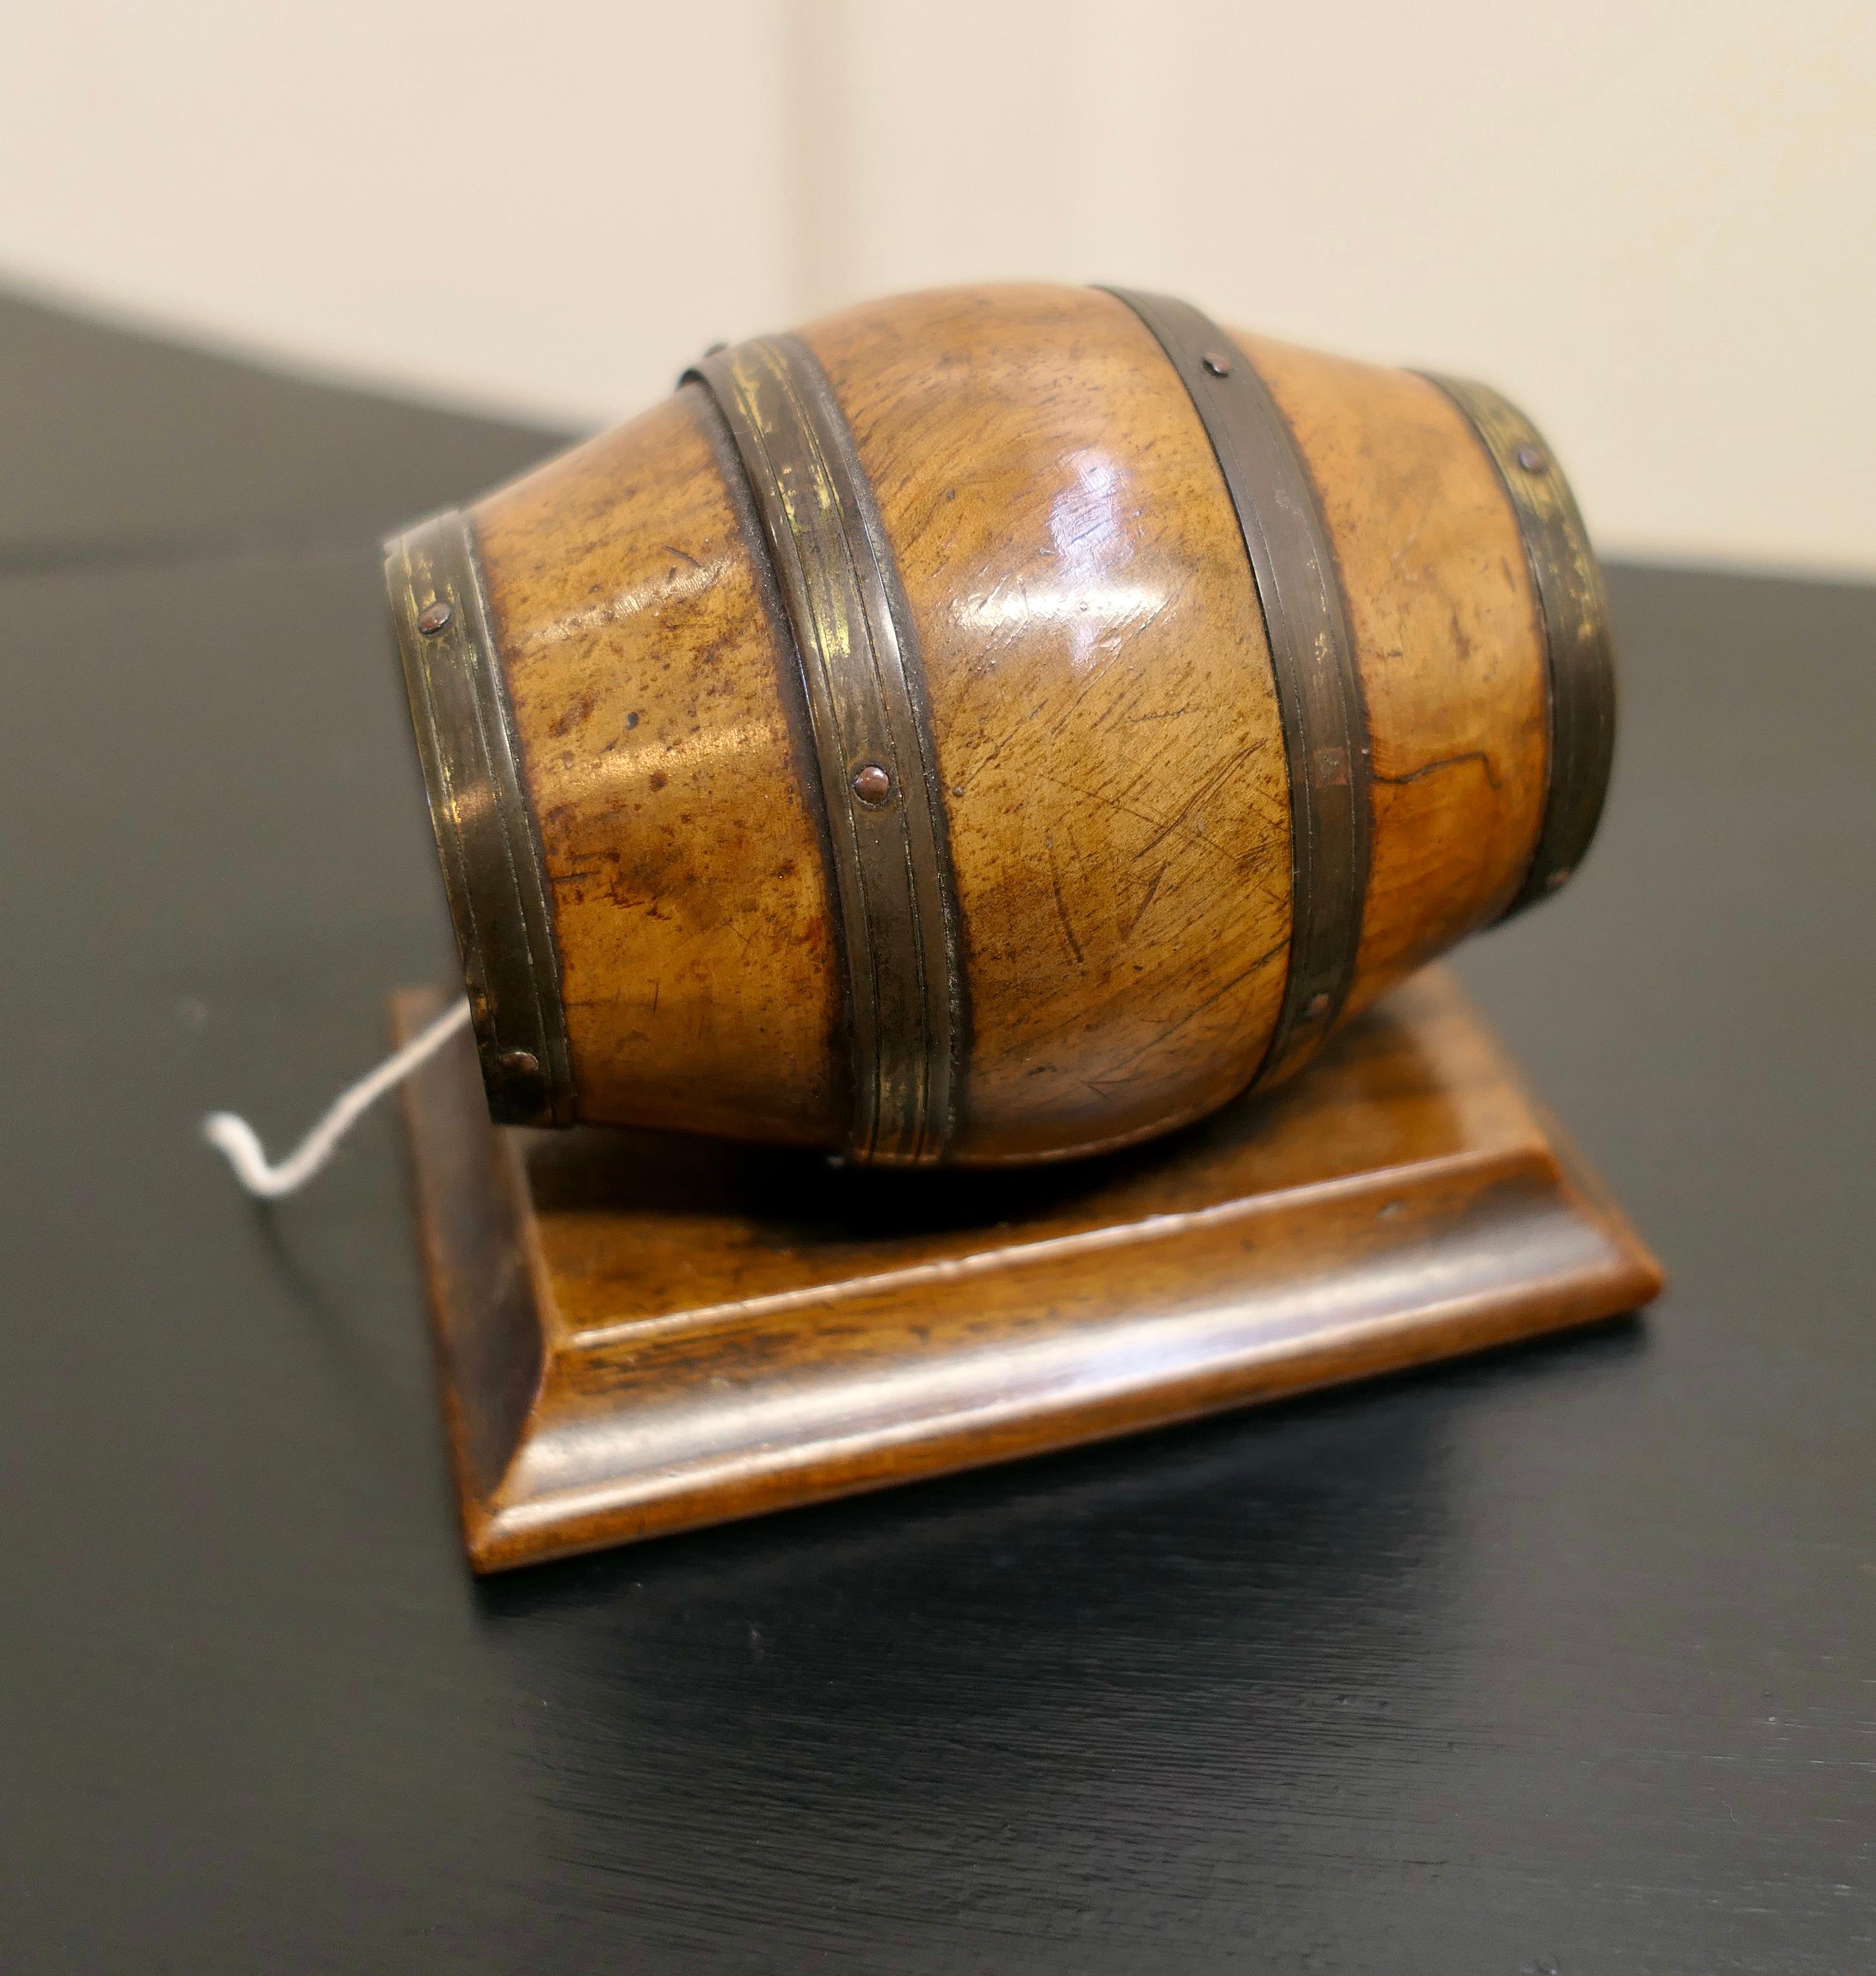 schnurlauf aus Eibenholz, 19. Jahrhundert, Eibenholz mit Messing umwickelt

Eine feine 19. Jahrhundert baumwollenen String Barrel, in baumwollenen mit Messing-Bänder auf rechteckigen Sockel gesetzt, die String-Box ist in gutem Zustand für sein